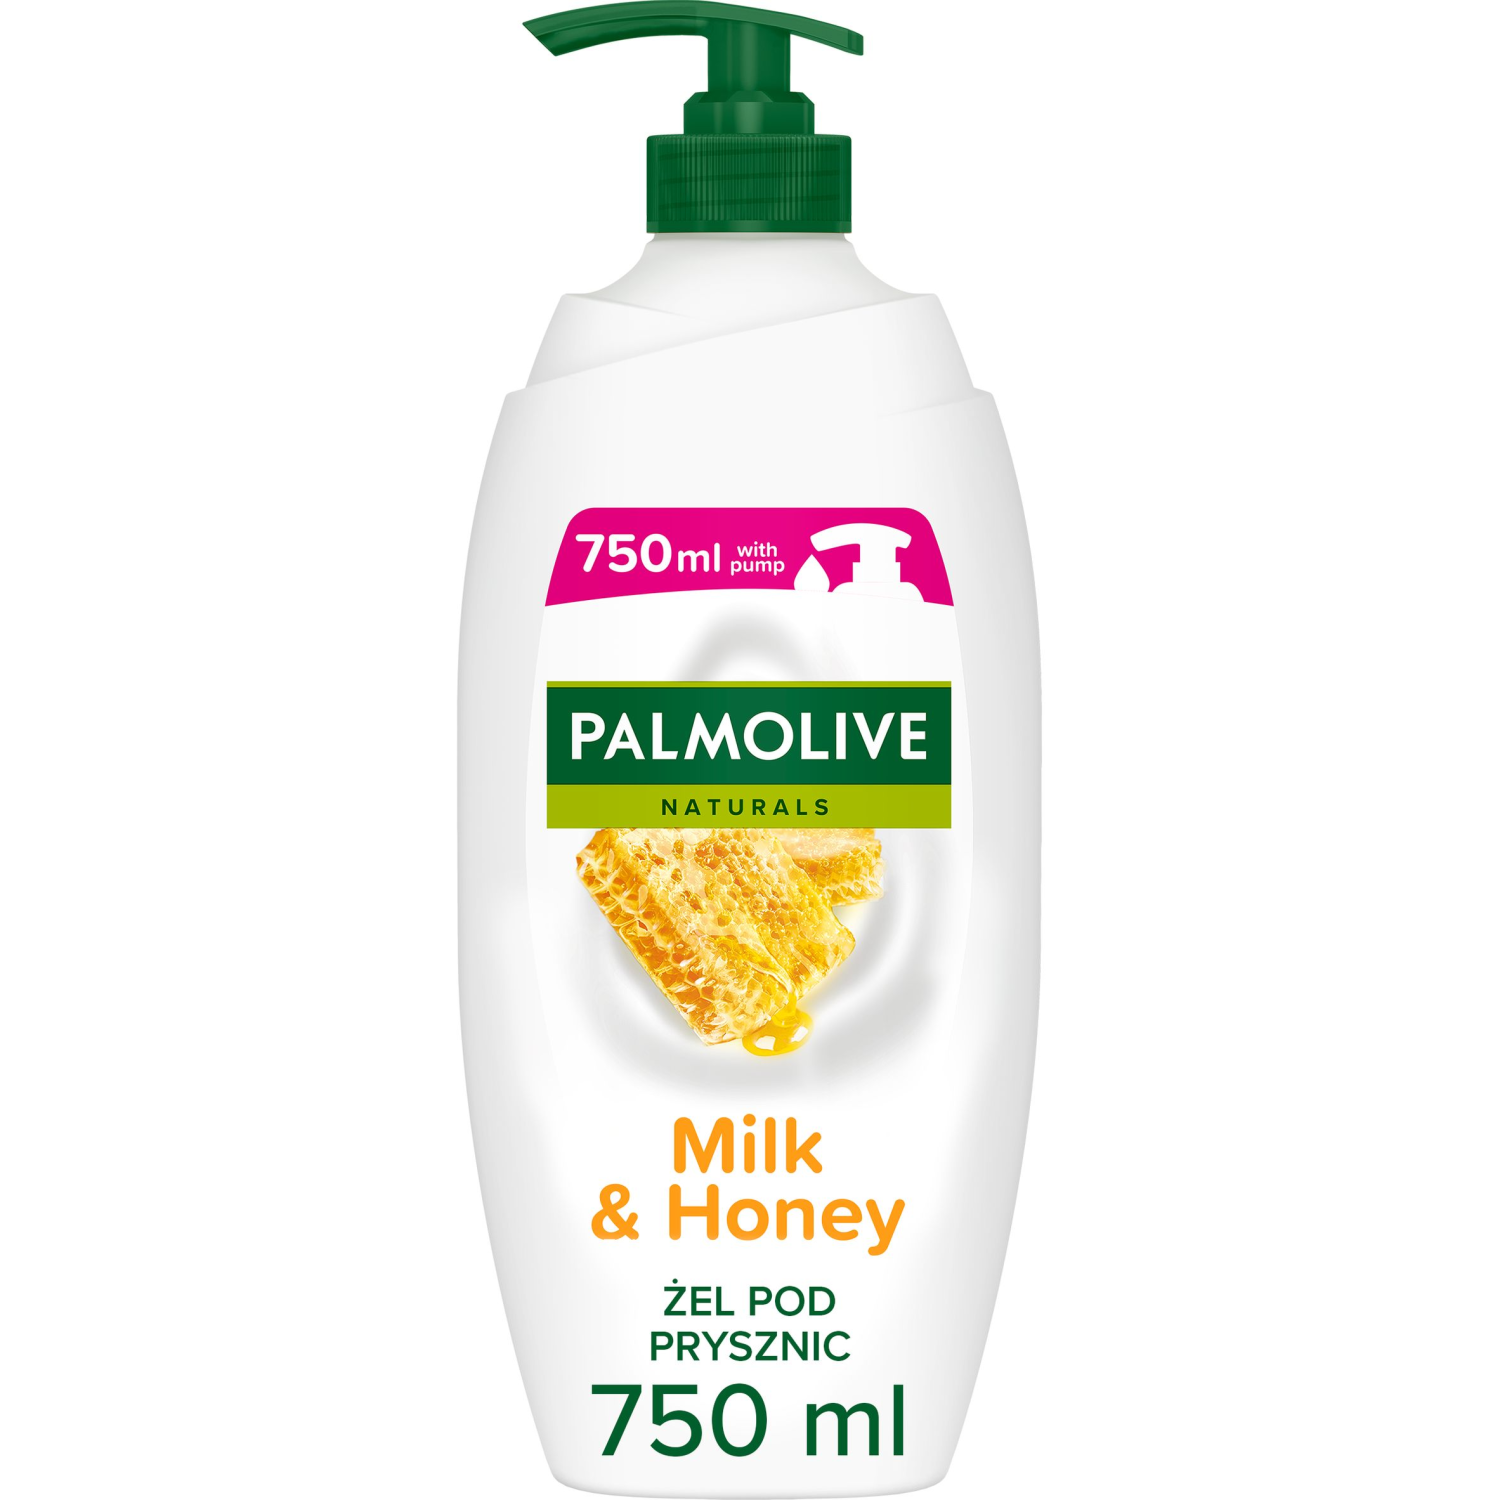 Palmolive Naturals крем-гель для душа, 750 мл гель крем для душа palmolive naturals vit c and orange 750 мл